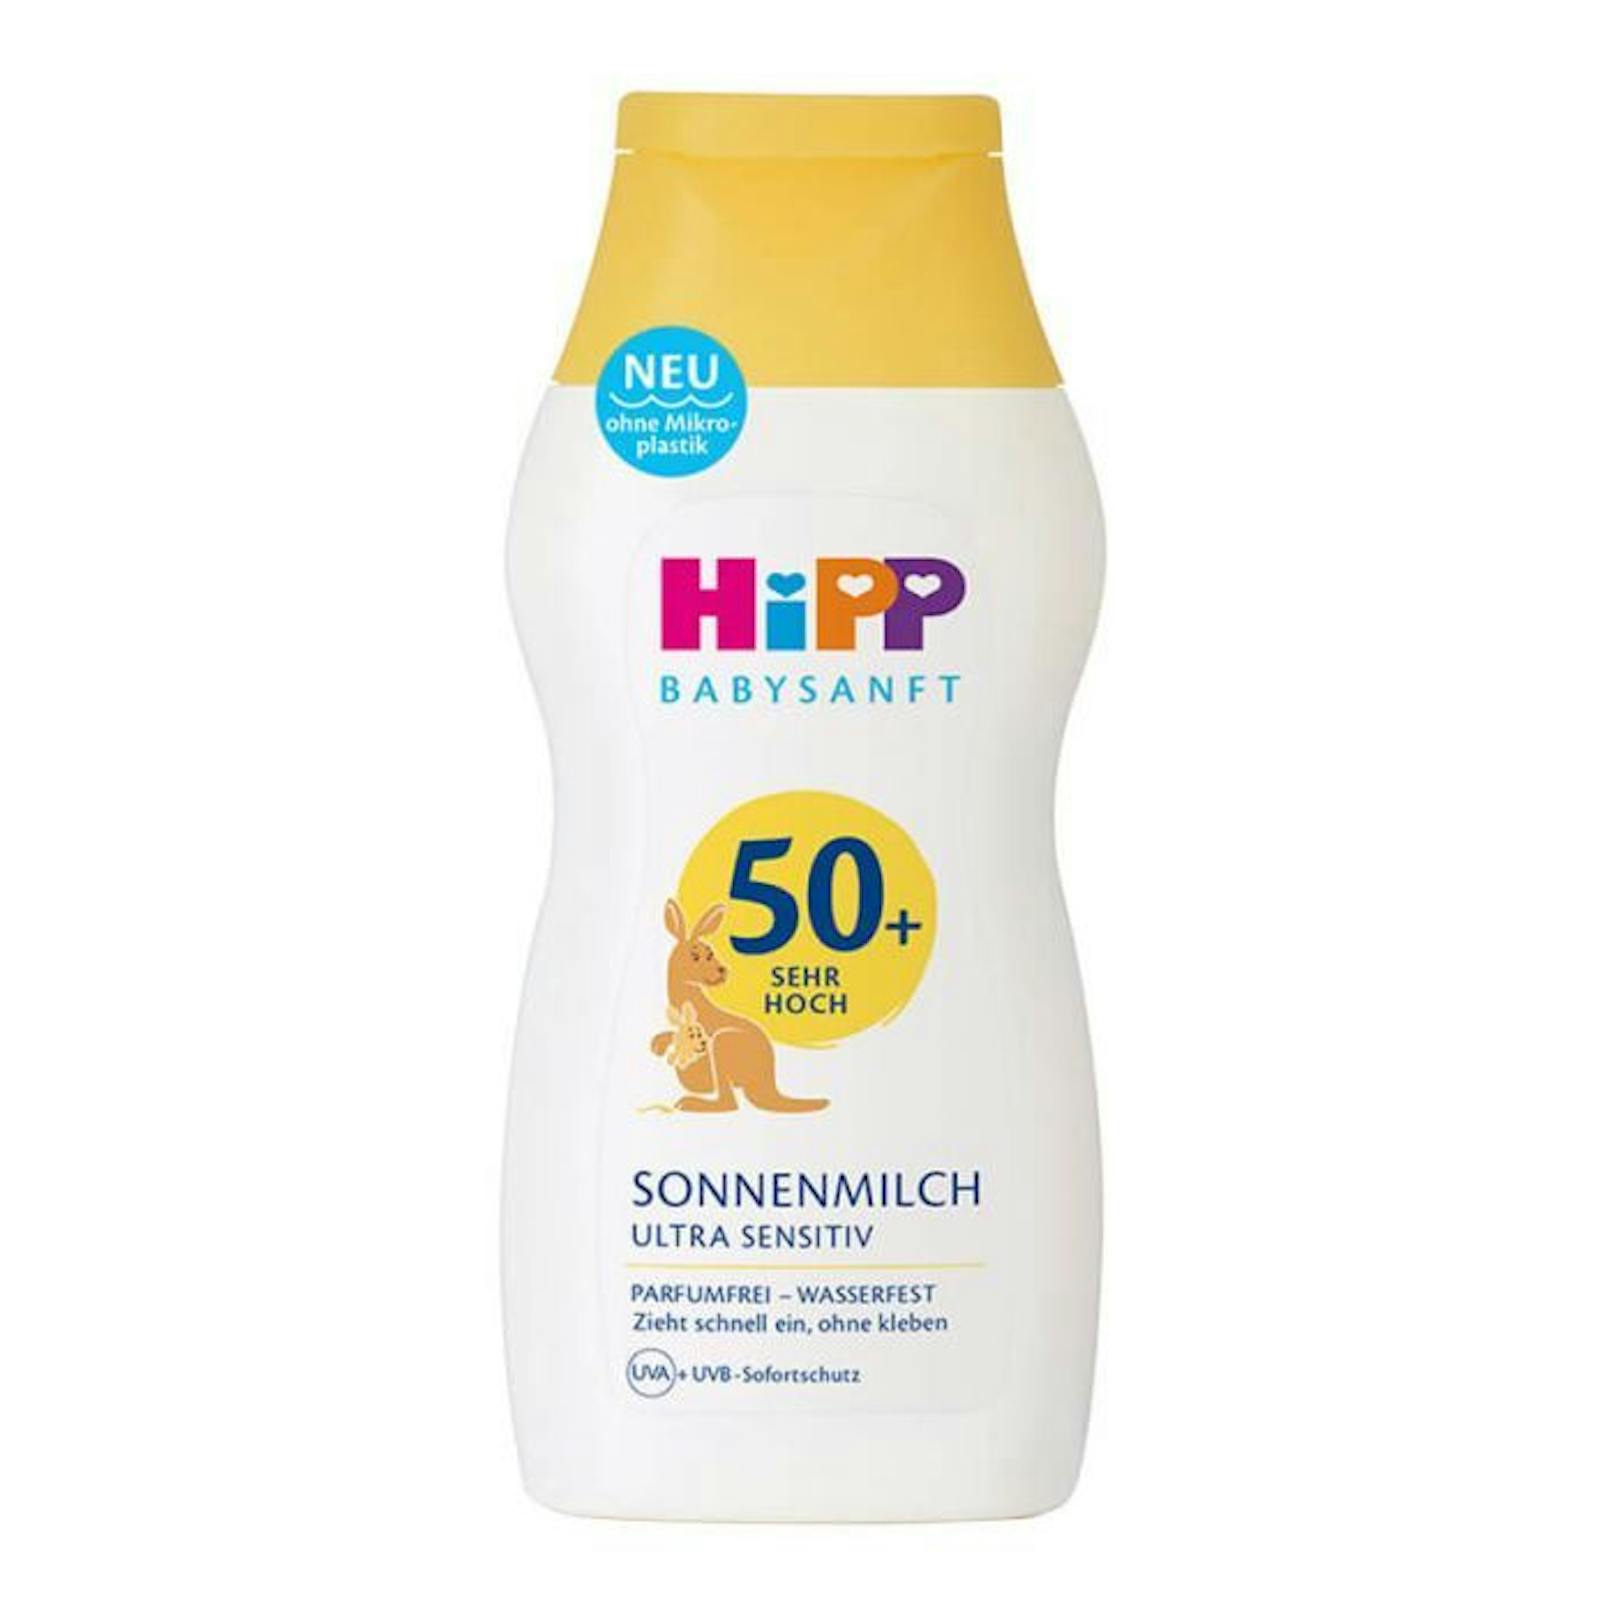 Die&nbsp;Hipp Babysanft Sonnenmilch Ultra Sensitiv schützt ebenso mit chemischem Filter, sonst unbedenklich. 200ml für 11,99 Euro.